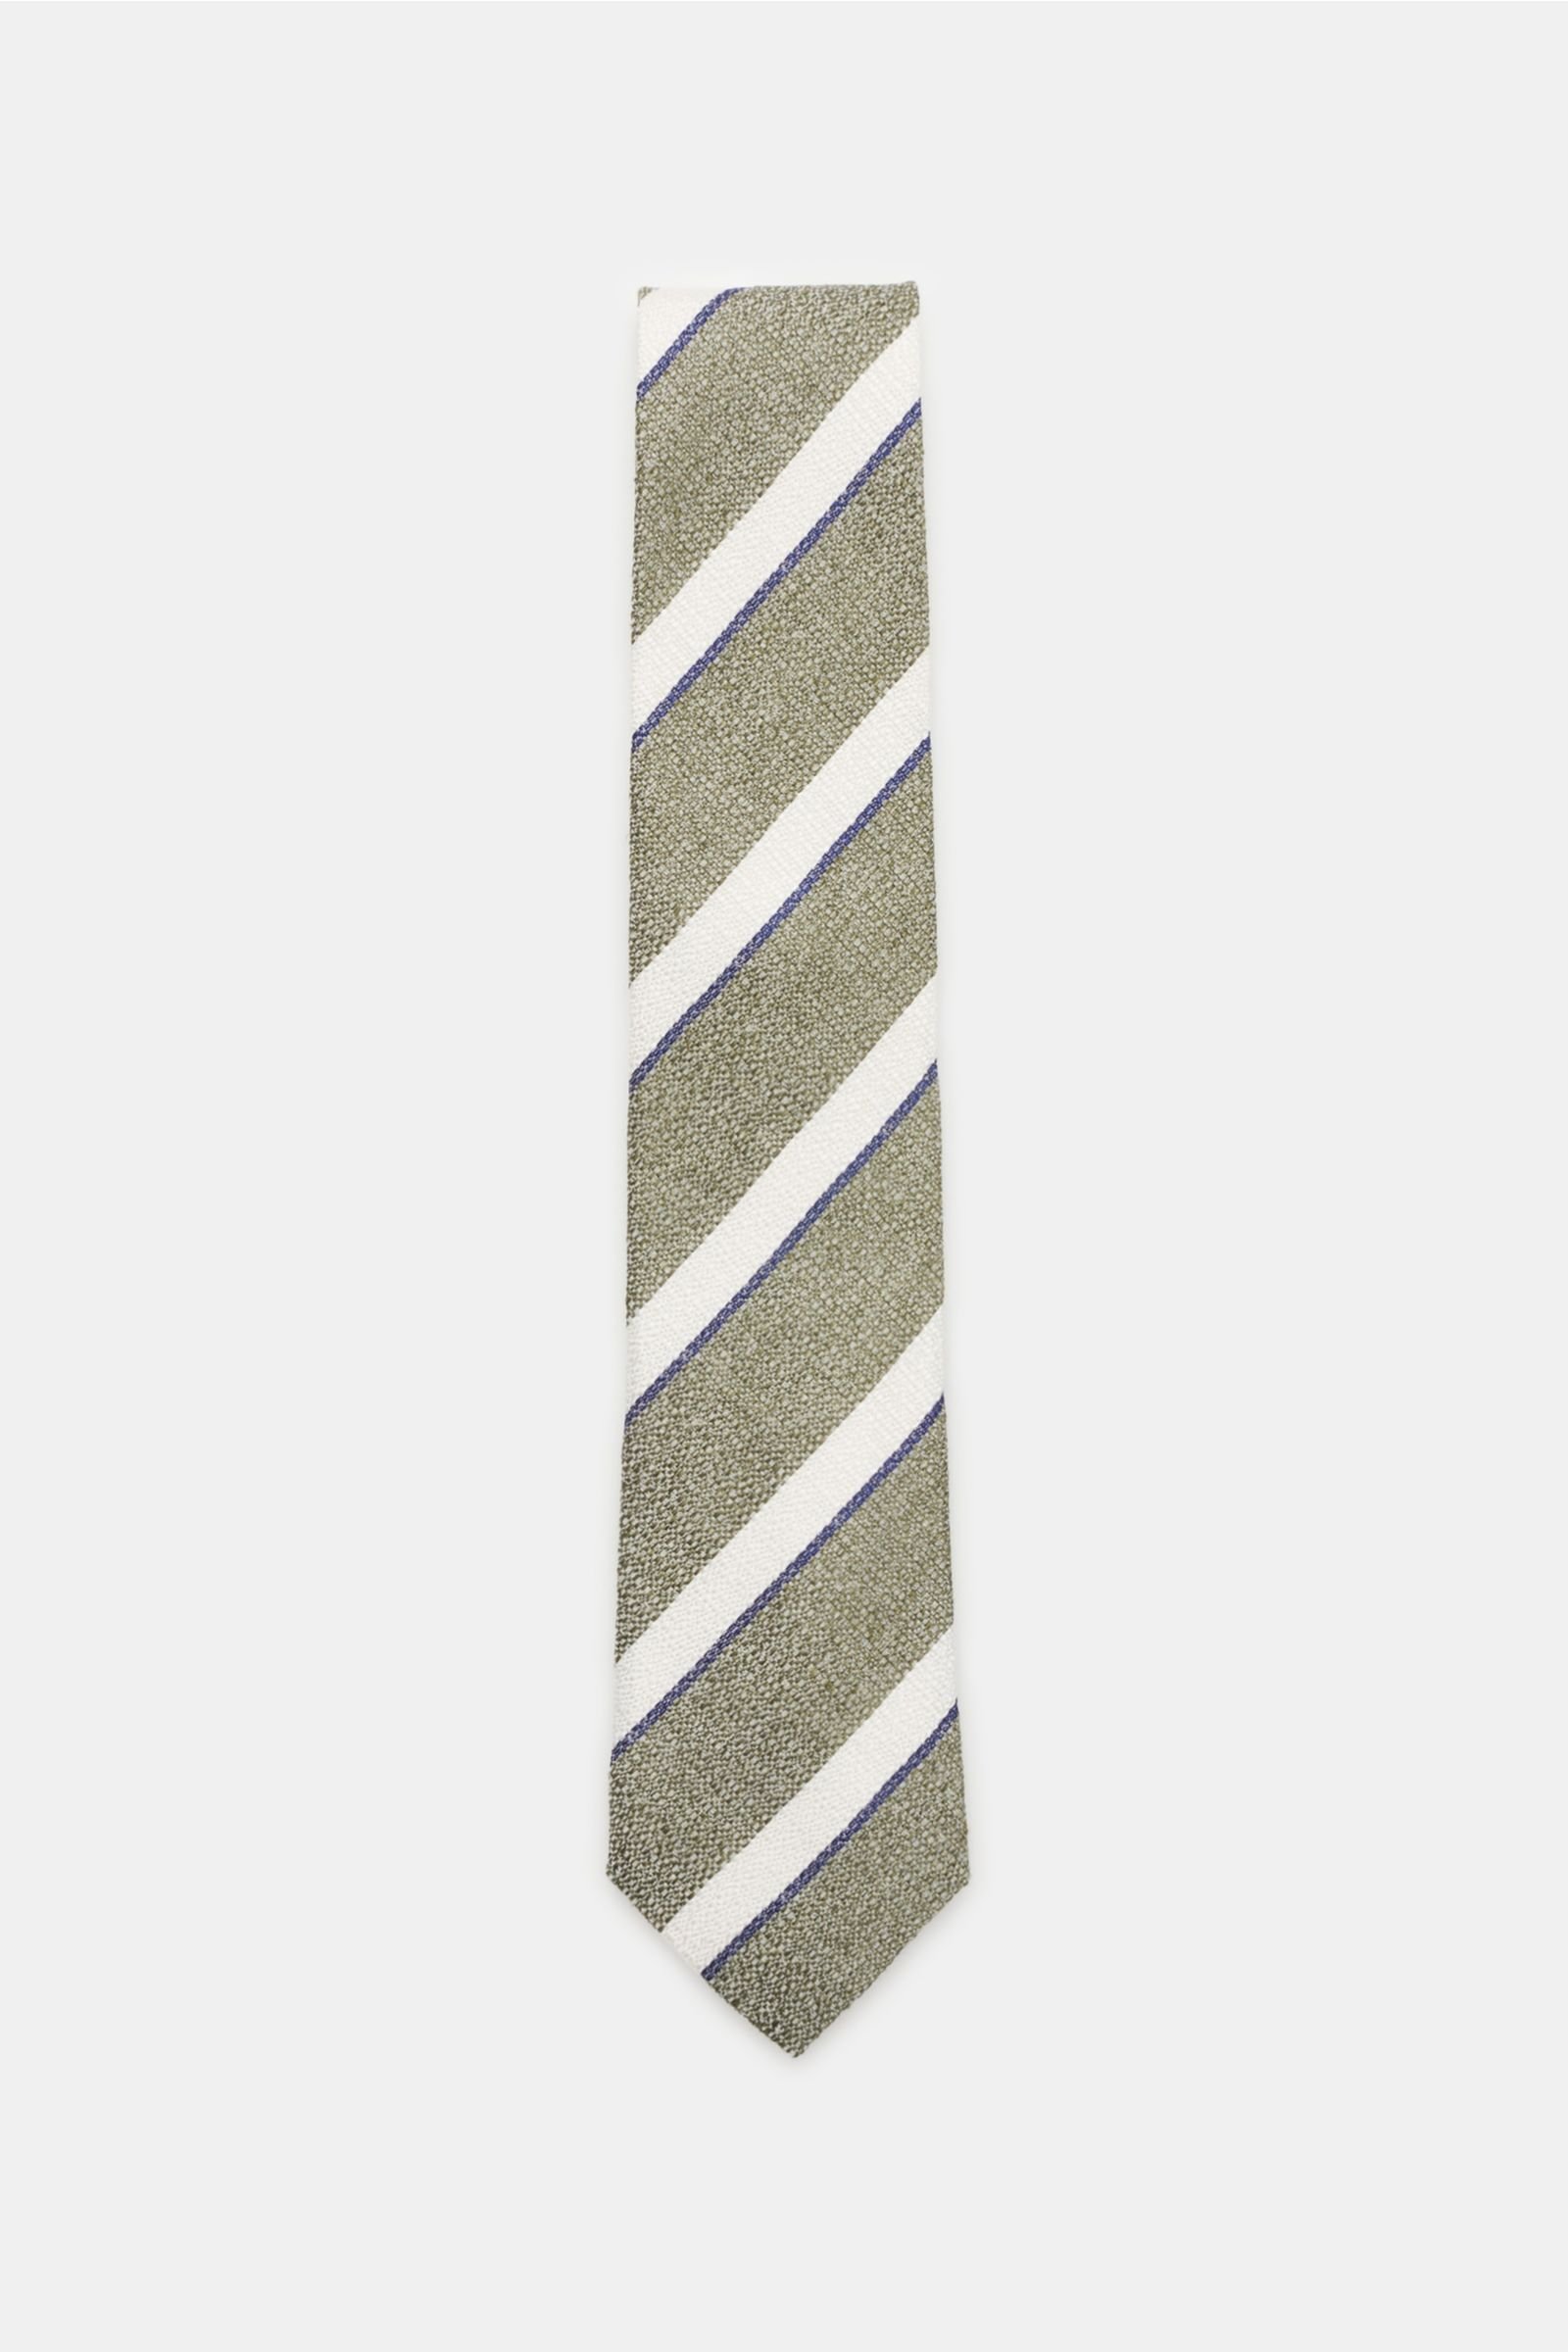 Krawatte oliv/weiß gestreift